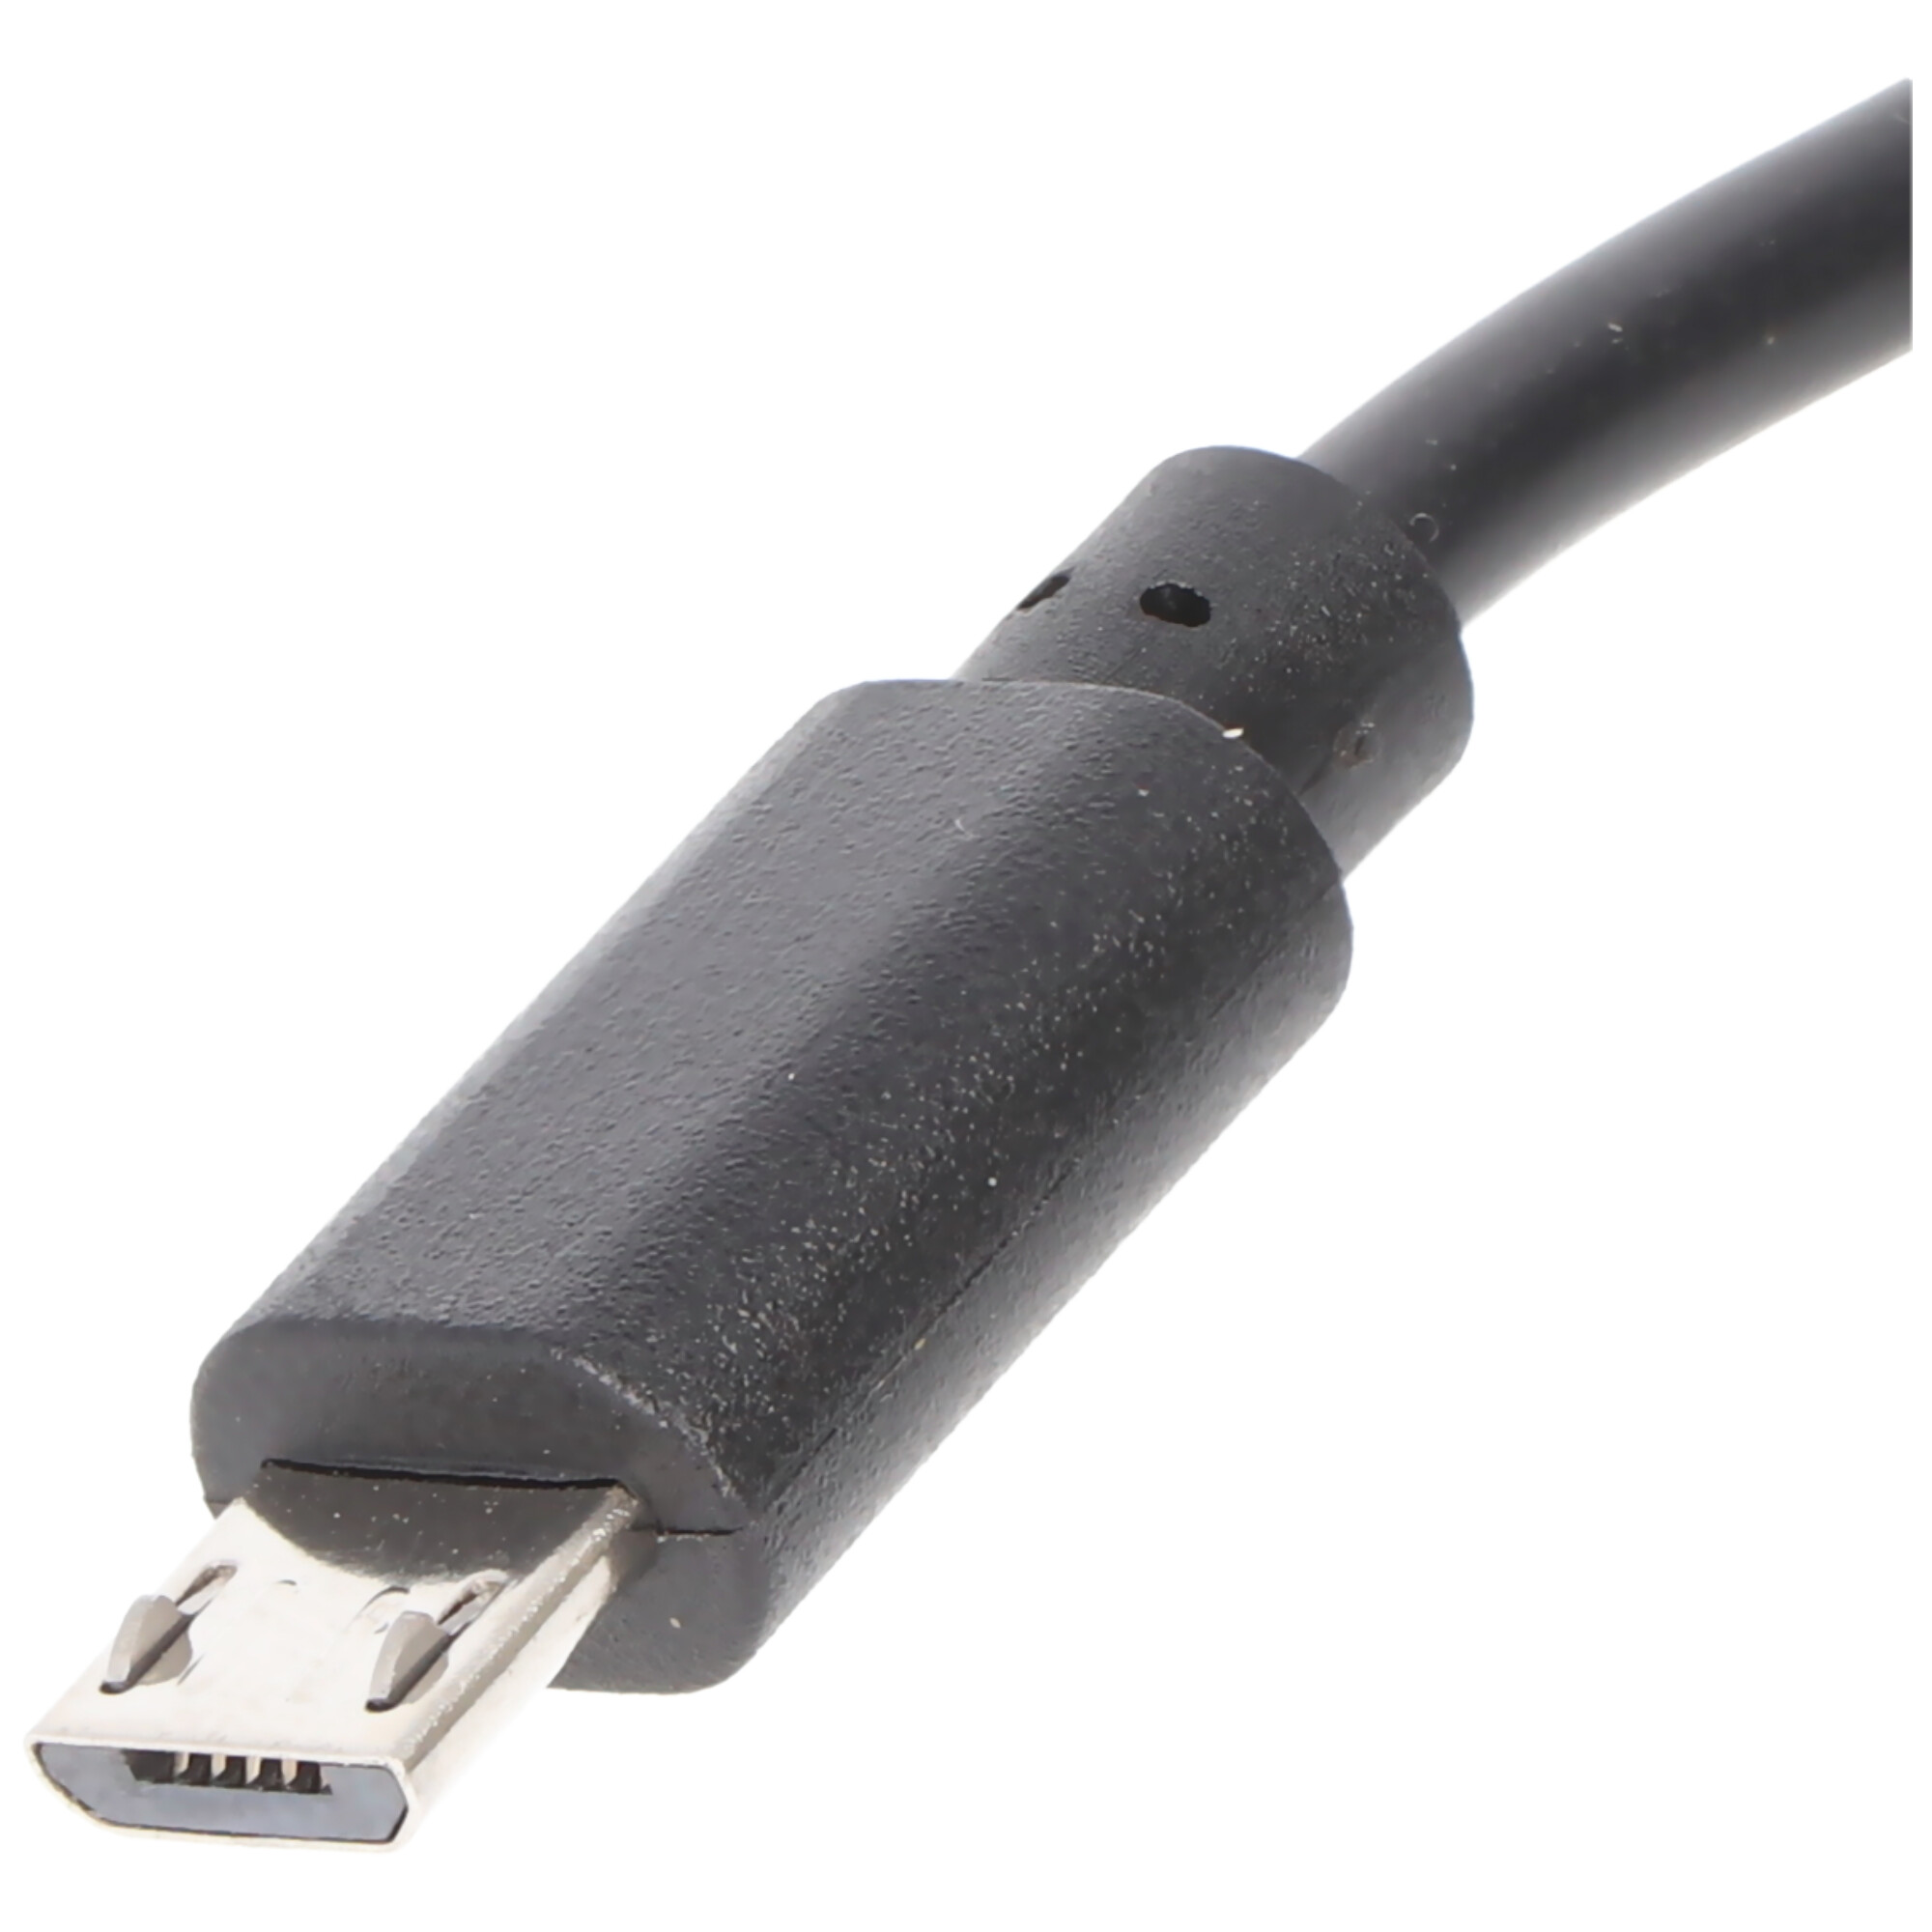 Ladegerät mit micro USB Stecker passend für Samsung Galaxy S2, S3, S4